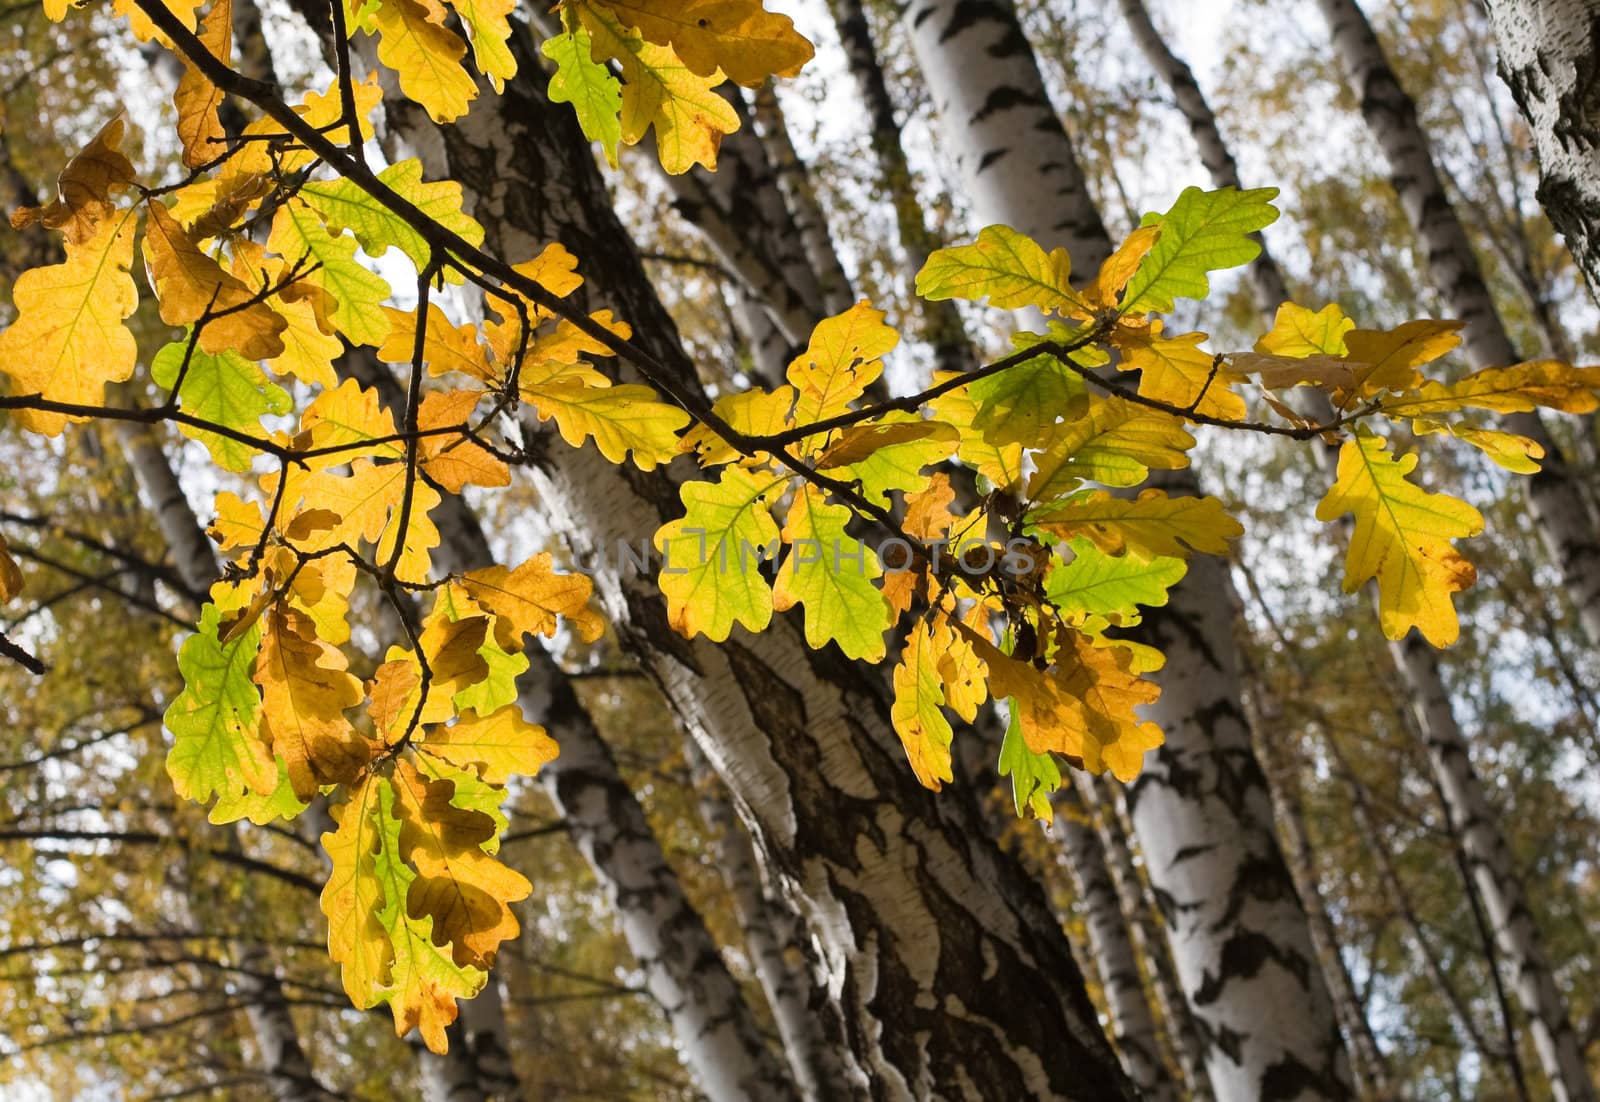 Oak leaves in fall season by serpl